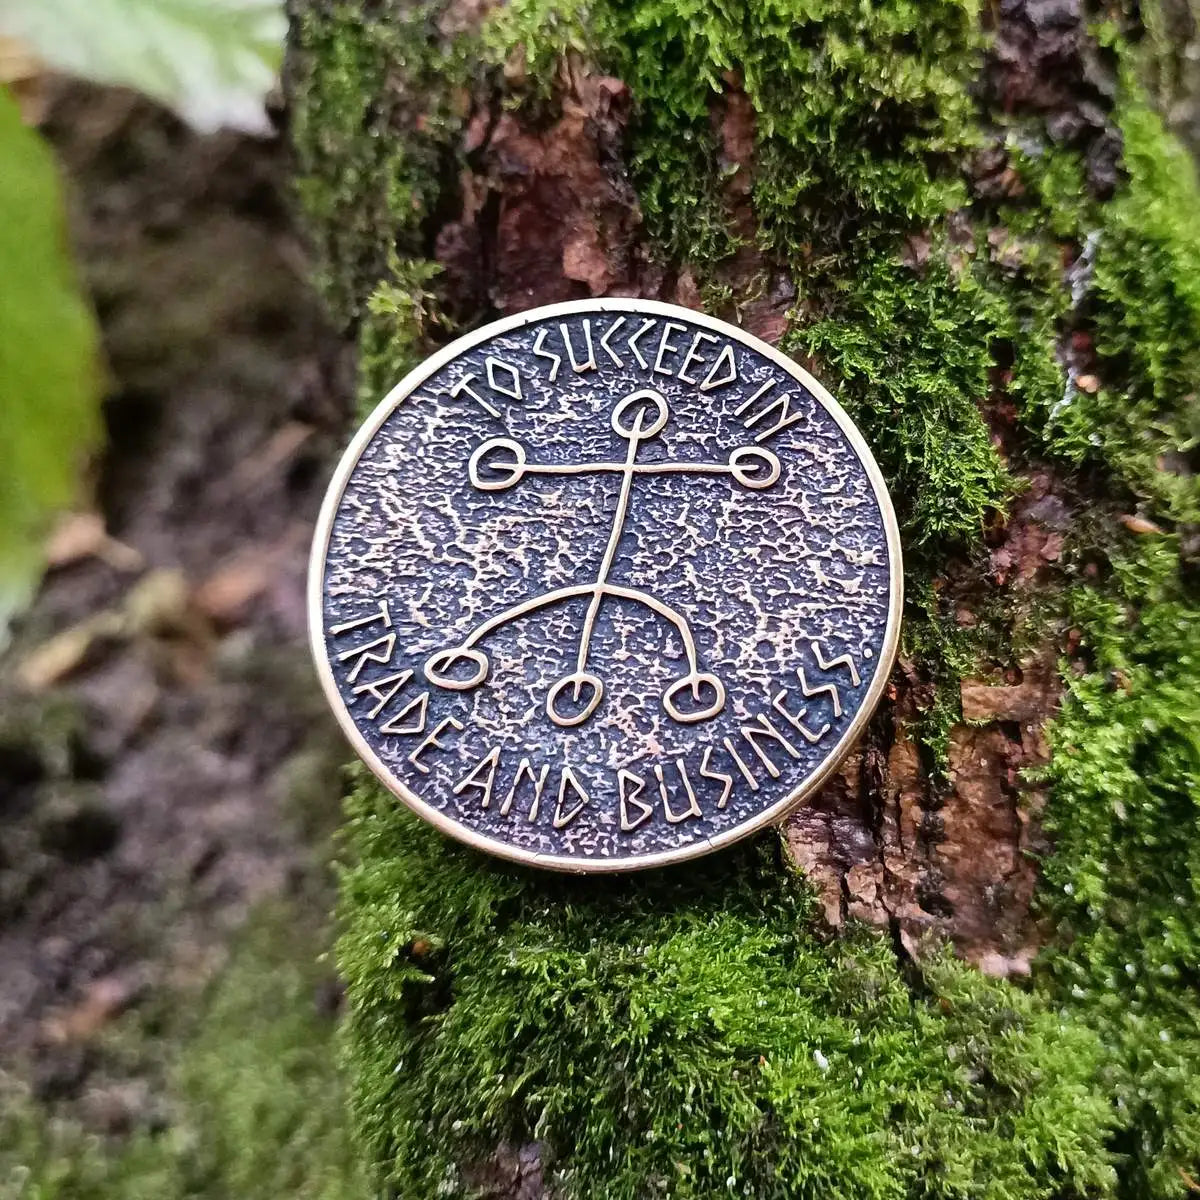 Kaupaloki bronze coin   